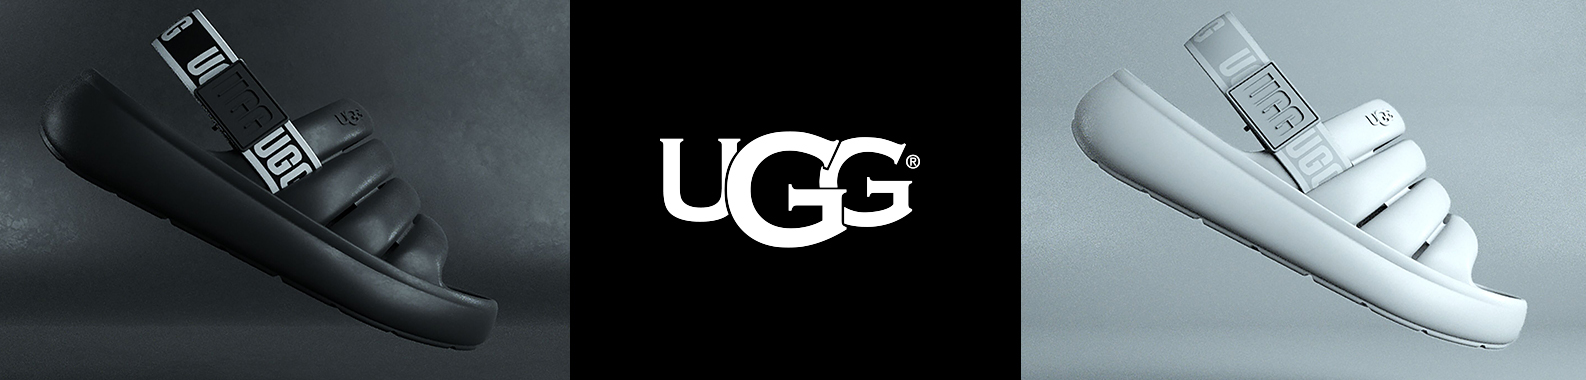 UGG brand header image